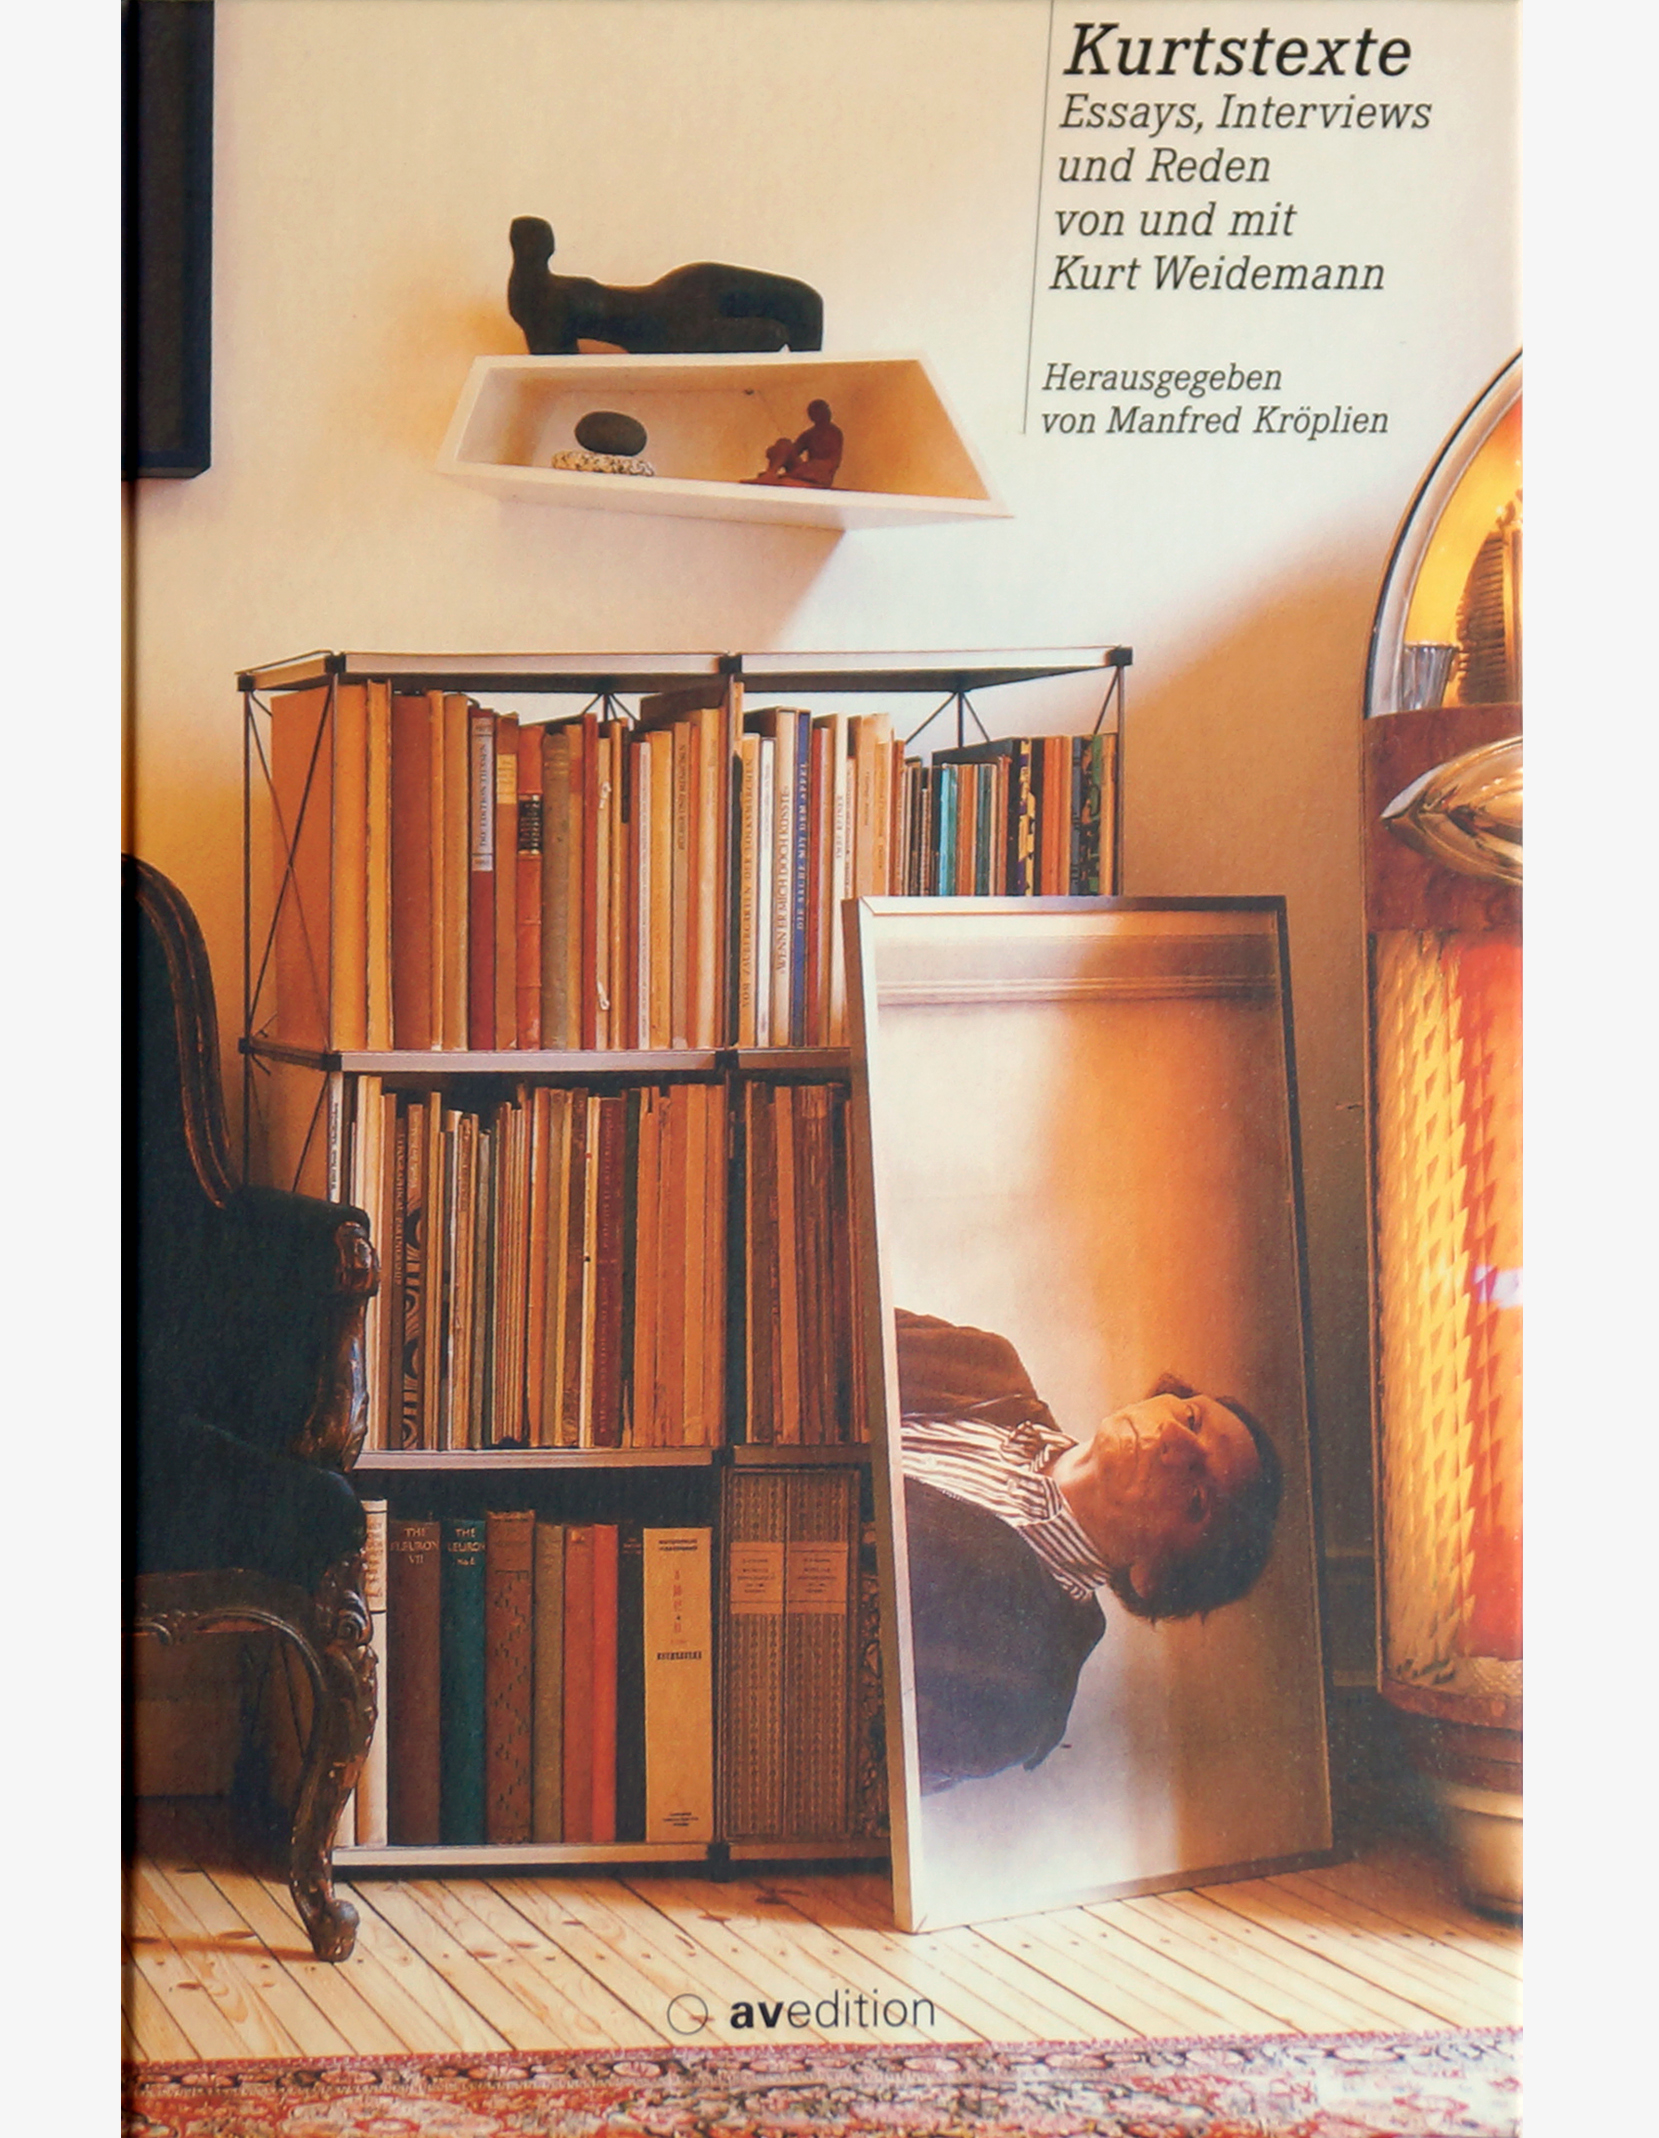 Kurtstexte – Essays, Interviews und Reden von und mit Kurt Weidemann